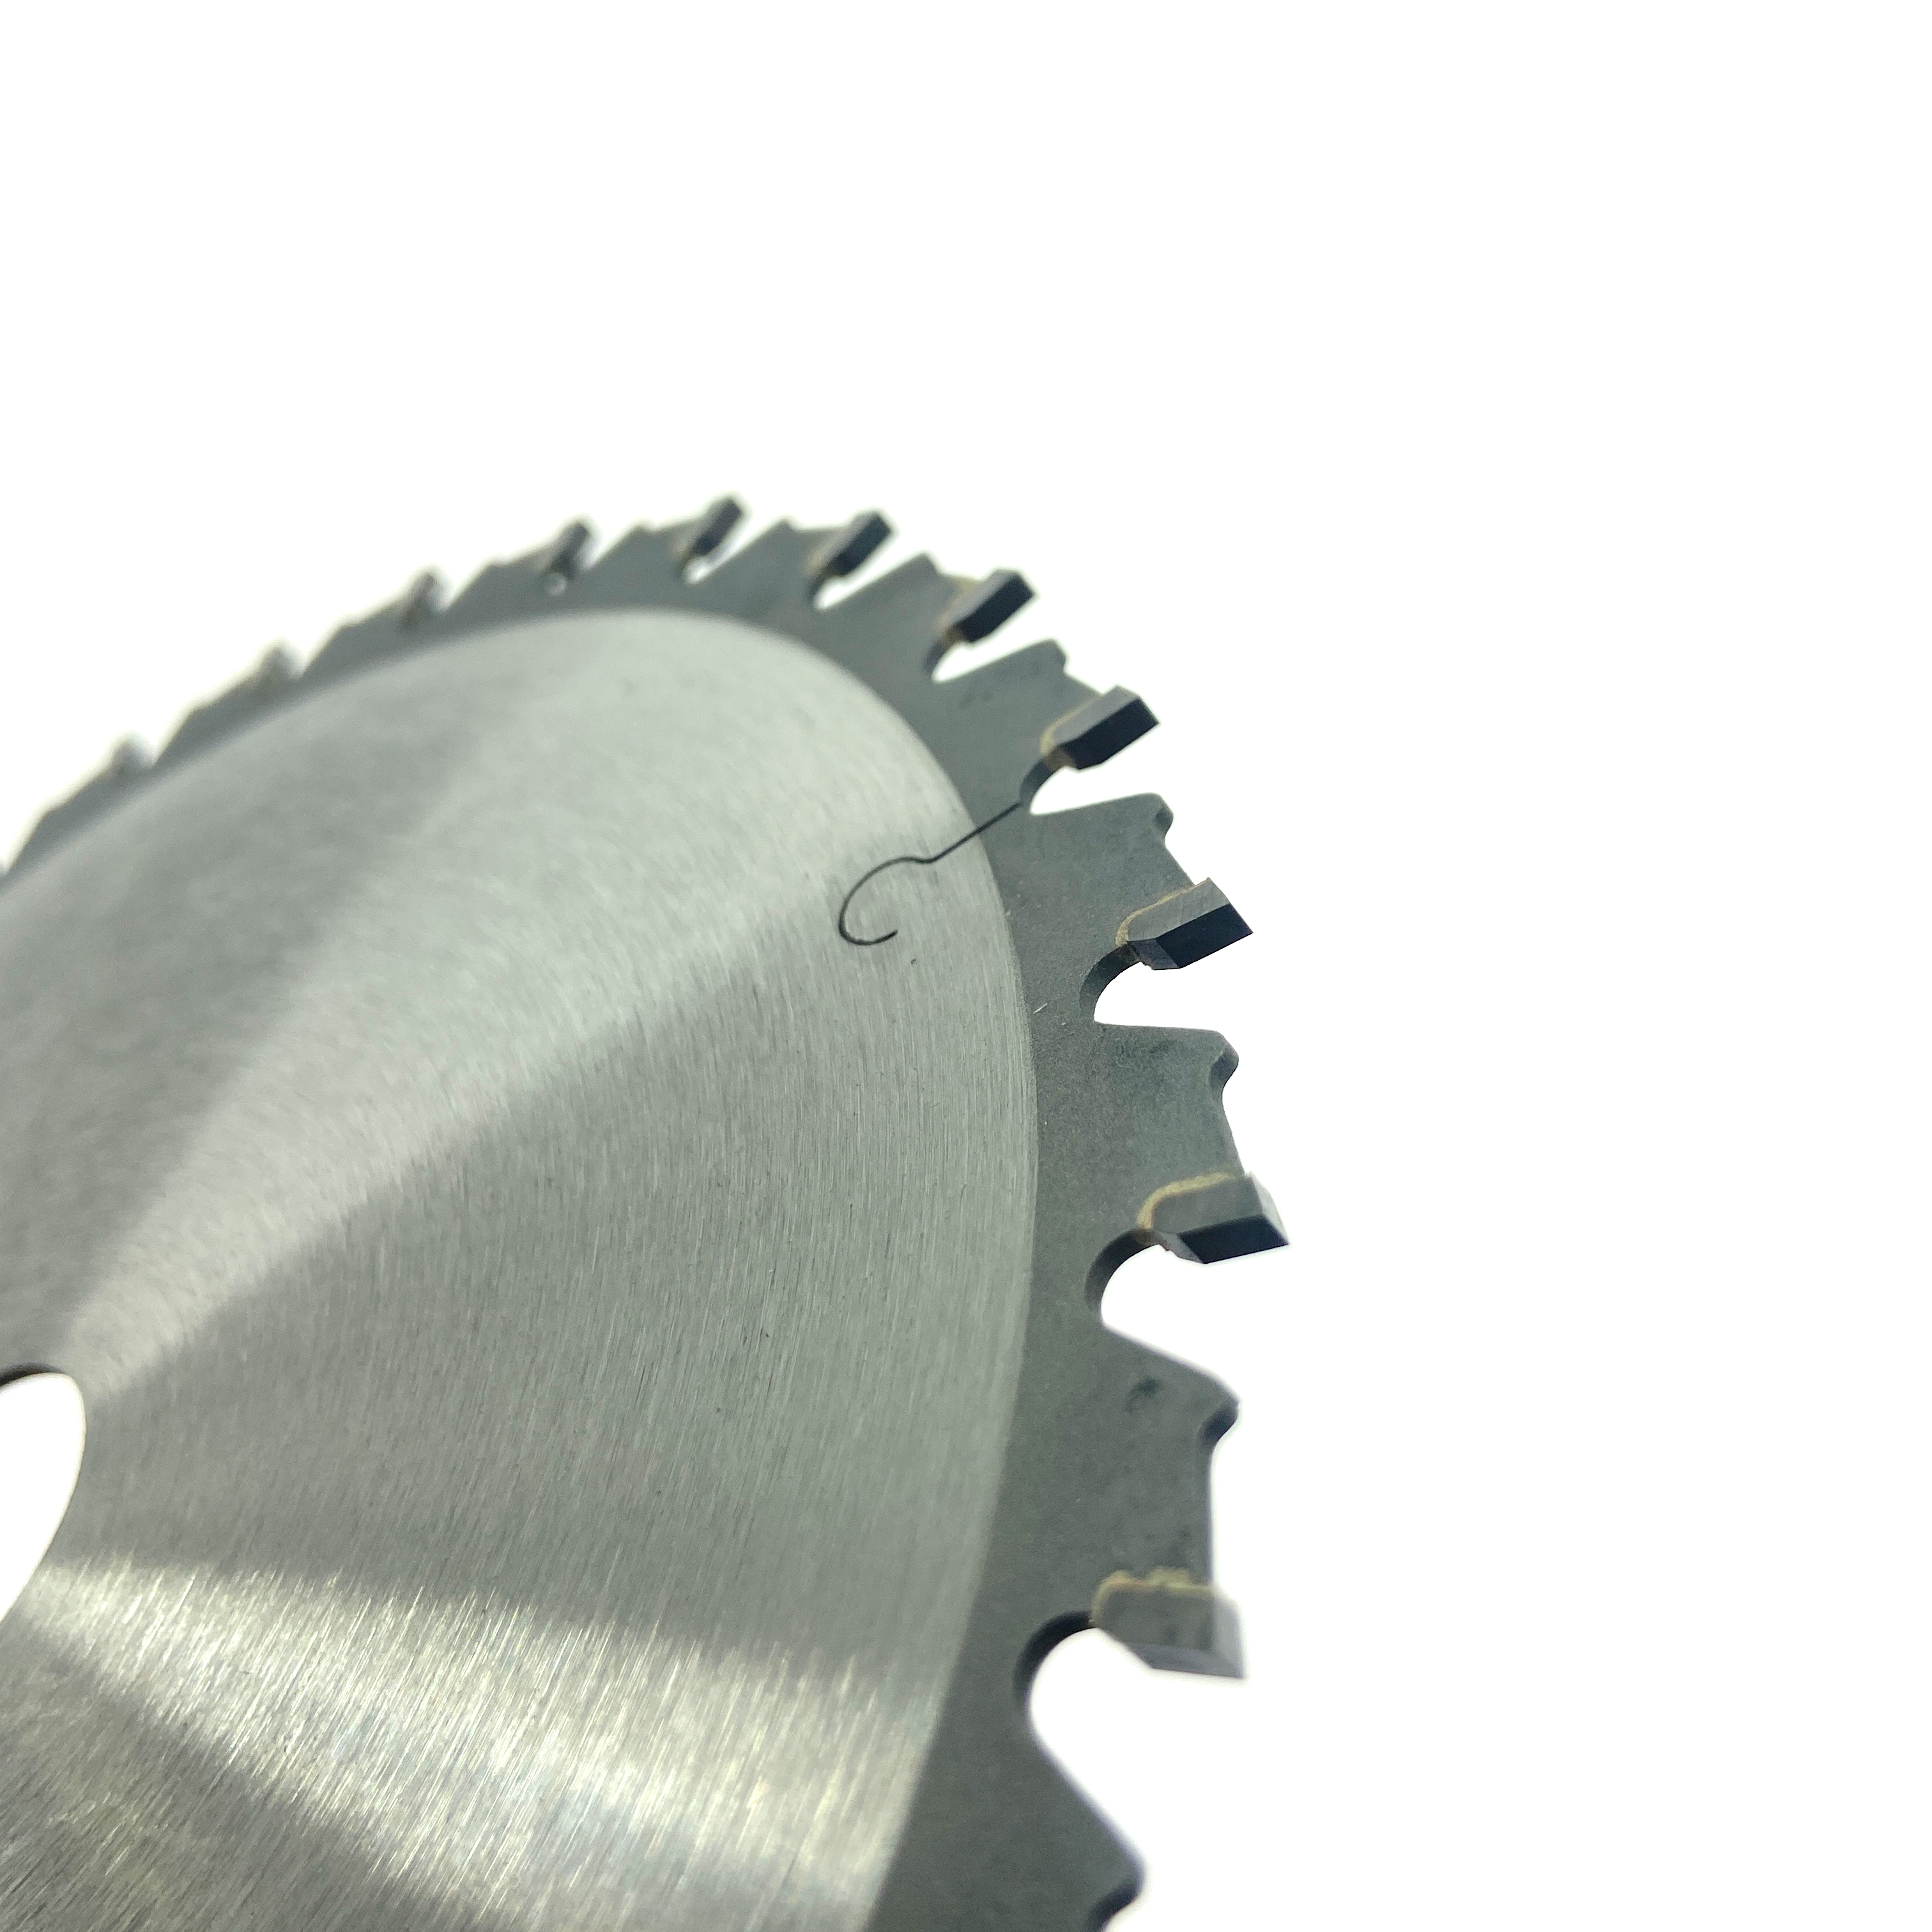 Hoja de sierra circular tct de exportación de 6 pulgadas 150 * 30T * 20 mm para cortar metal